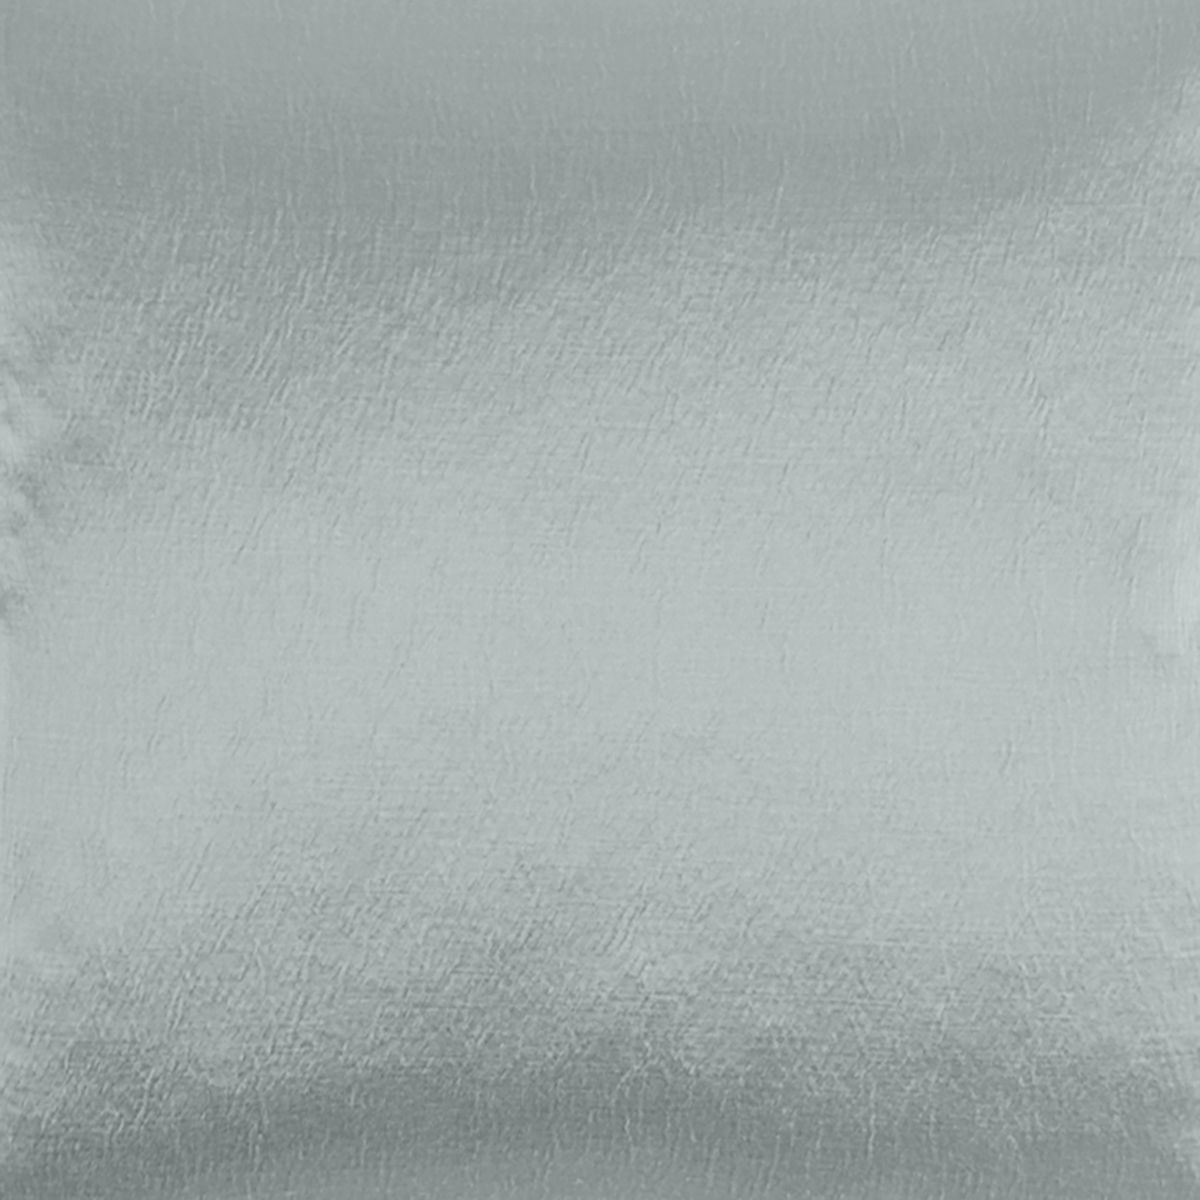 Glaze Mist Fabric by Voyage Maison